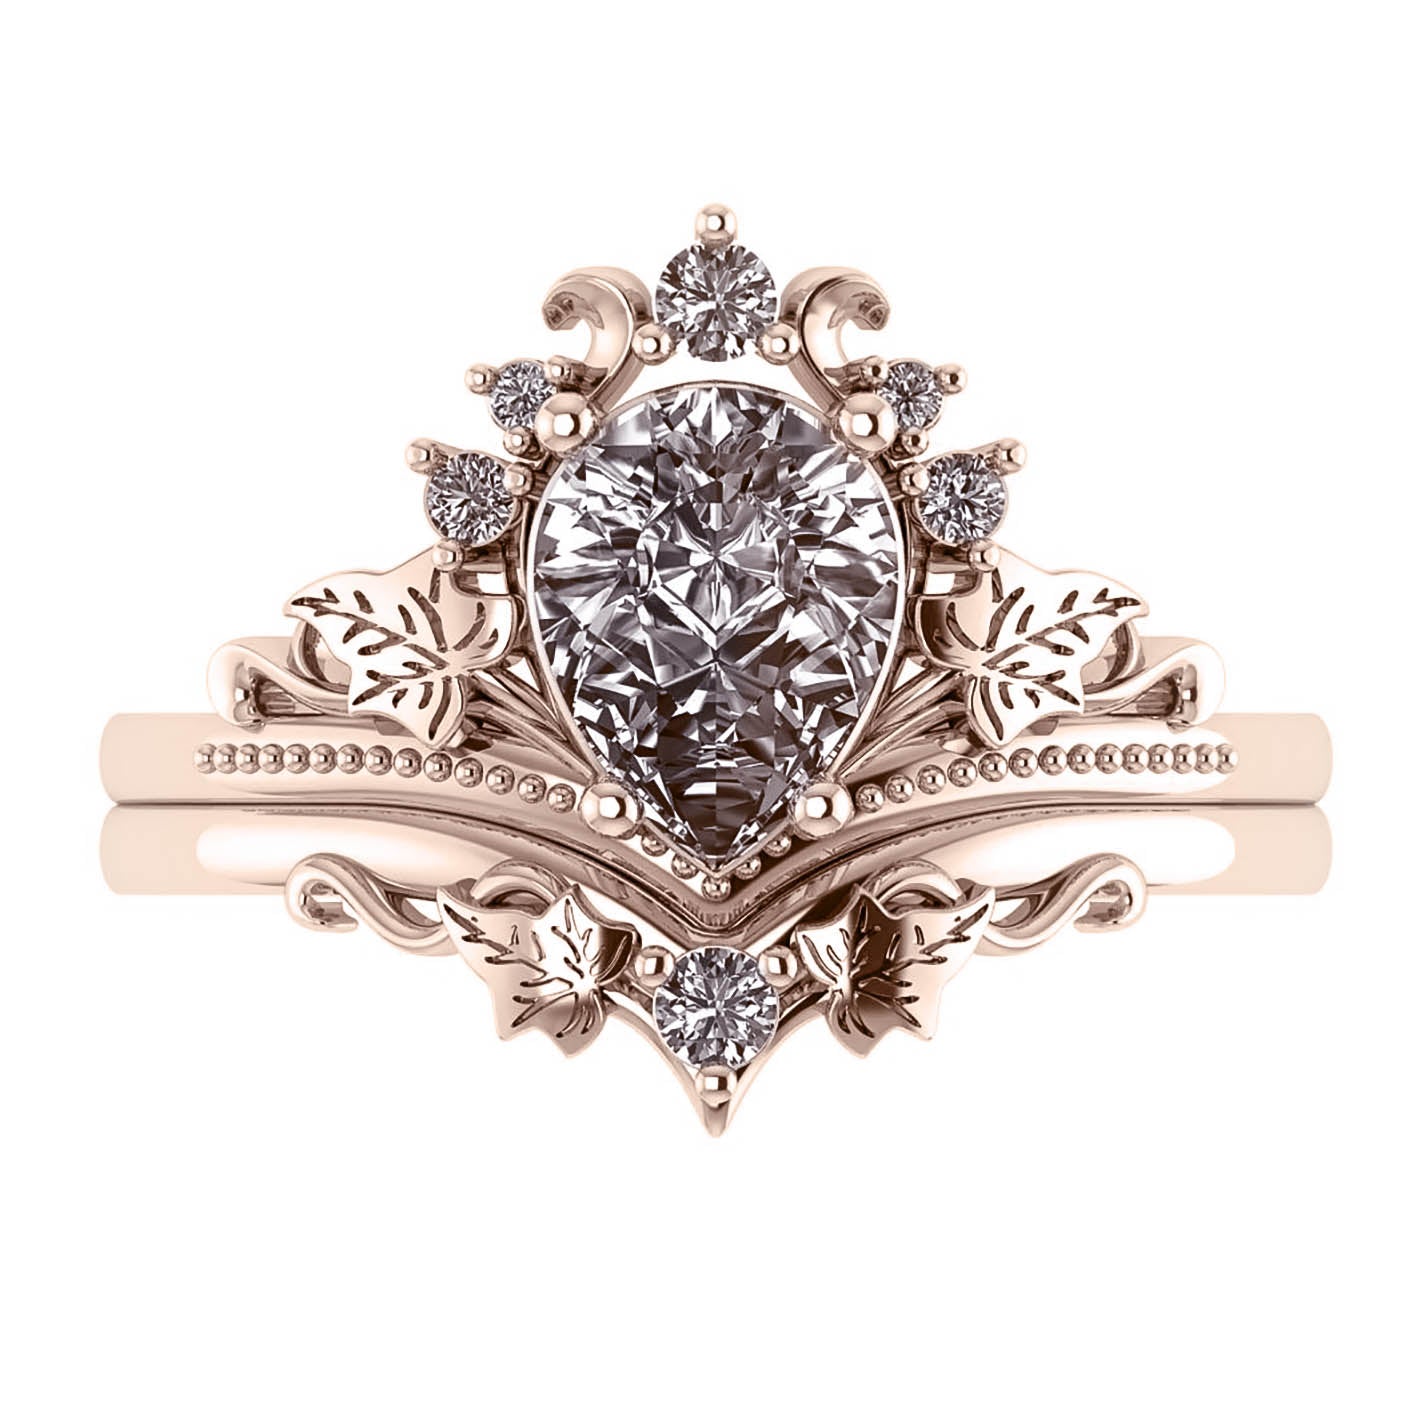 Ariadne | bridal ring set, pear cut 8x6 mm gemstone setting - Eden Garden Jewelry™